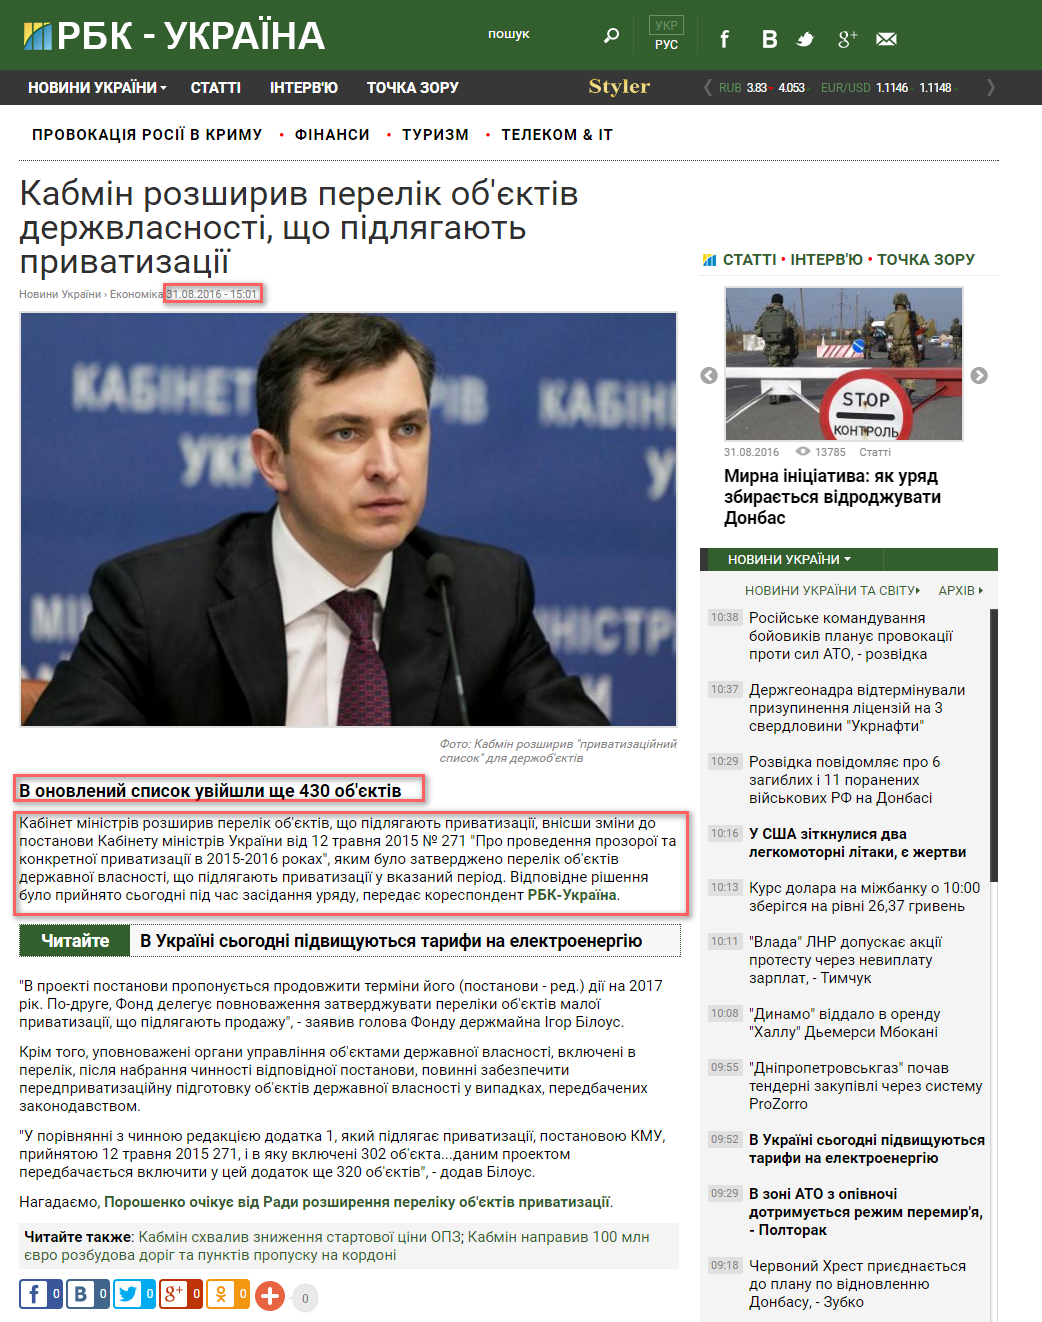 https://www.rbc.ua/ukr/news/kabmin-rasshiril-perechen-obektov-gossobstvennosti-1472644917.html